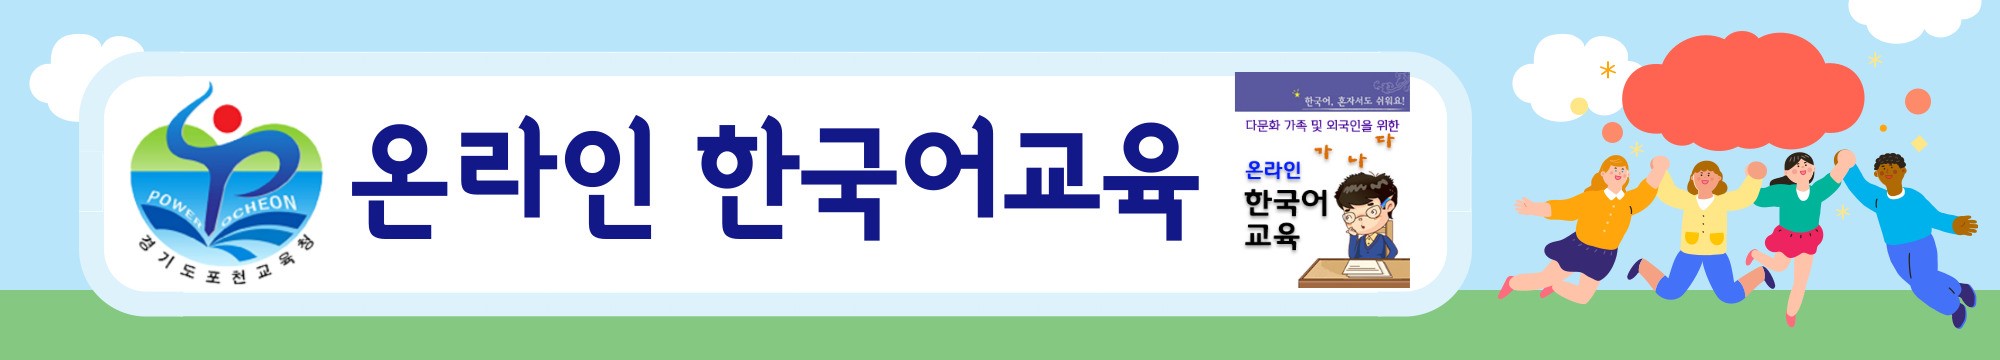 경기도포천교육지원청 교육과_온라인한국어교육  배너.jpg